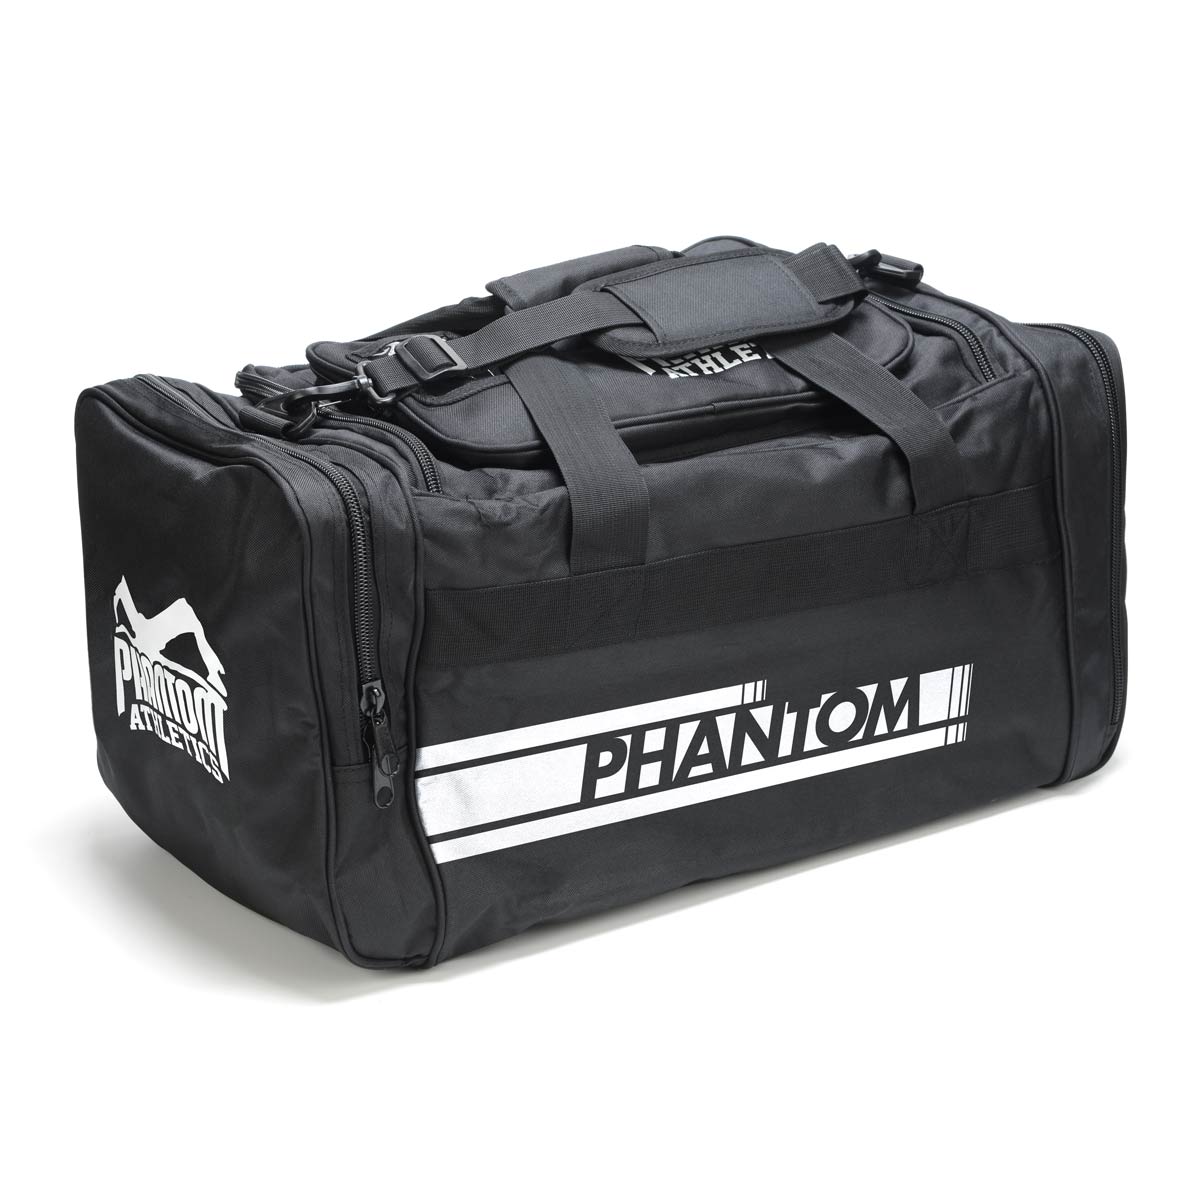 Die Phantom Team Sporttasche im Apex Design mit vielen praktischen Fächern für Kampfsport